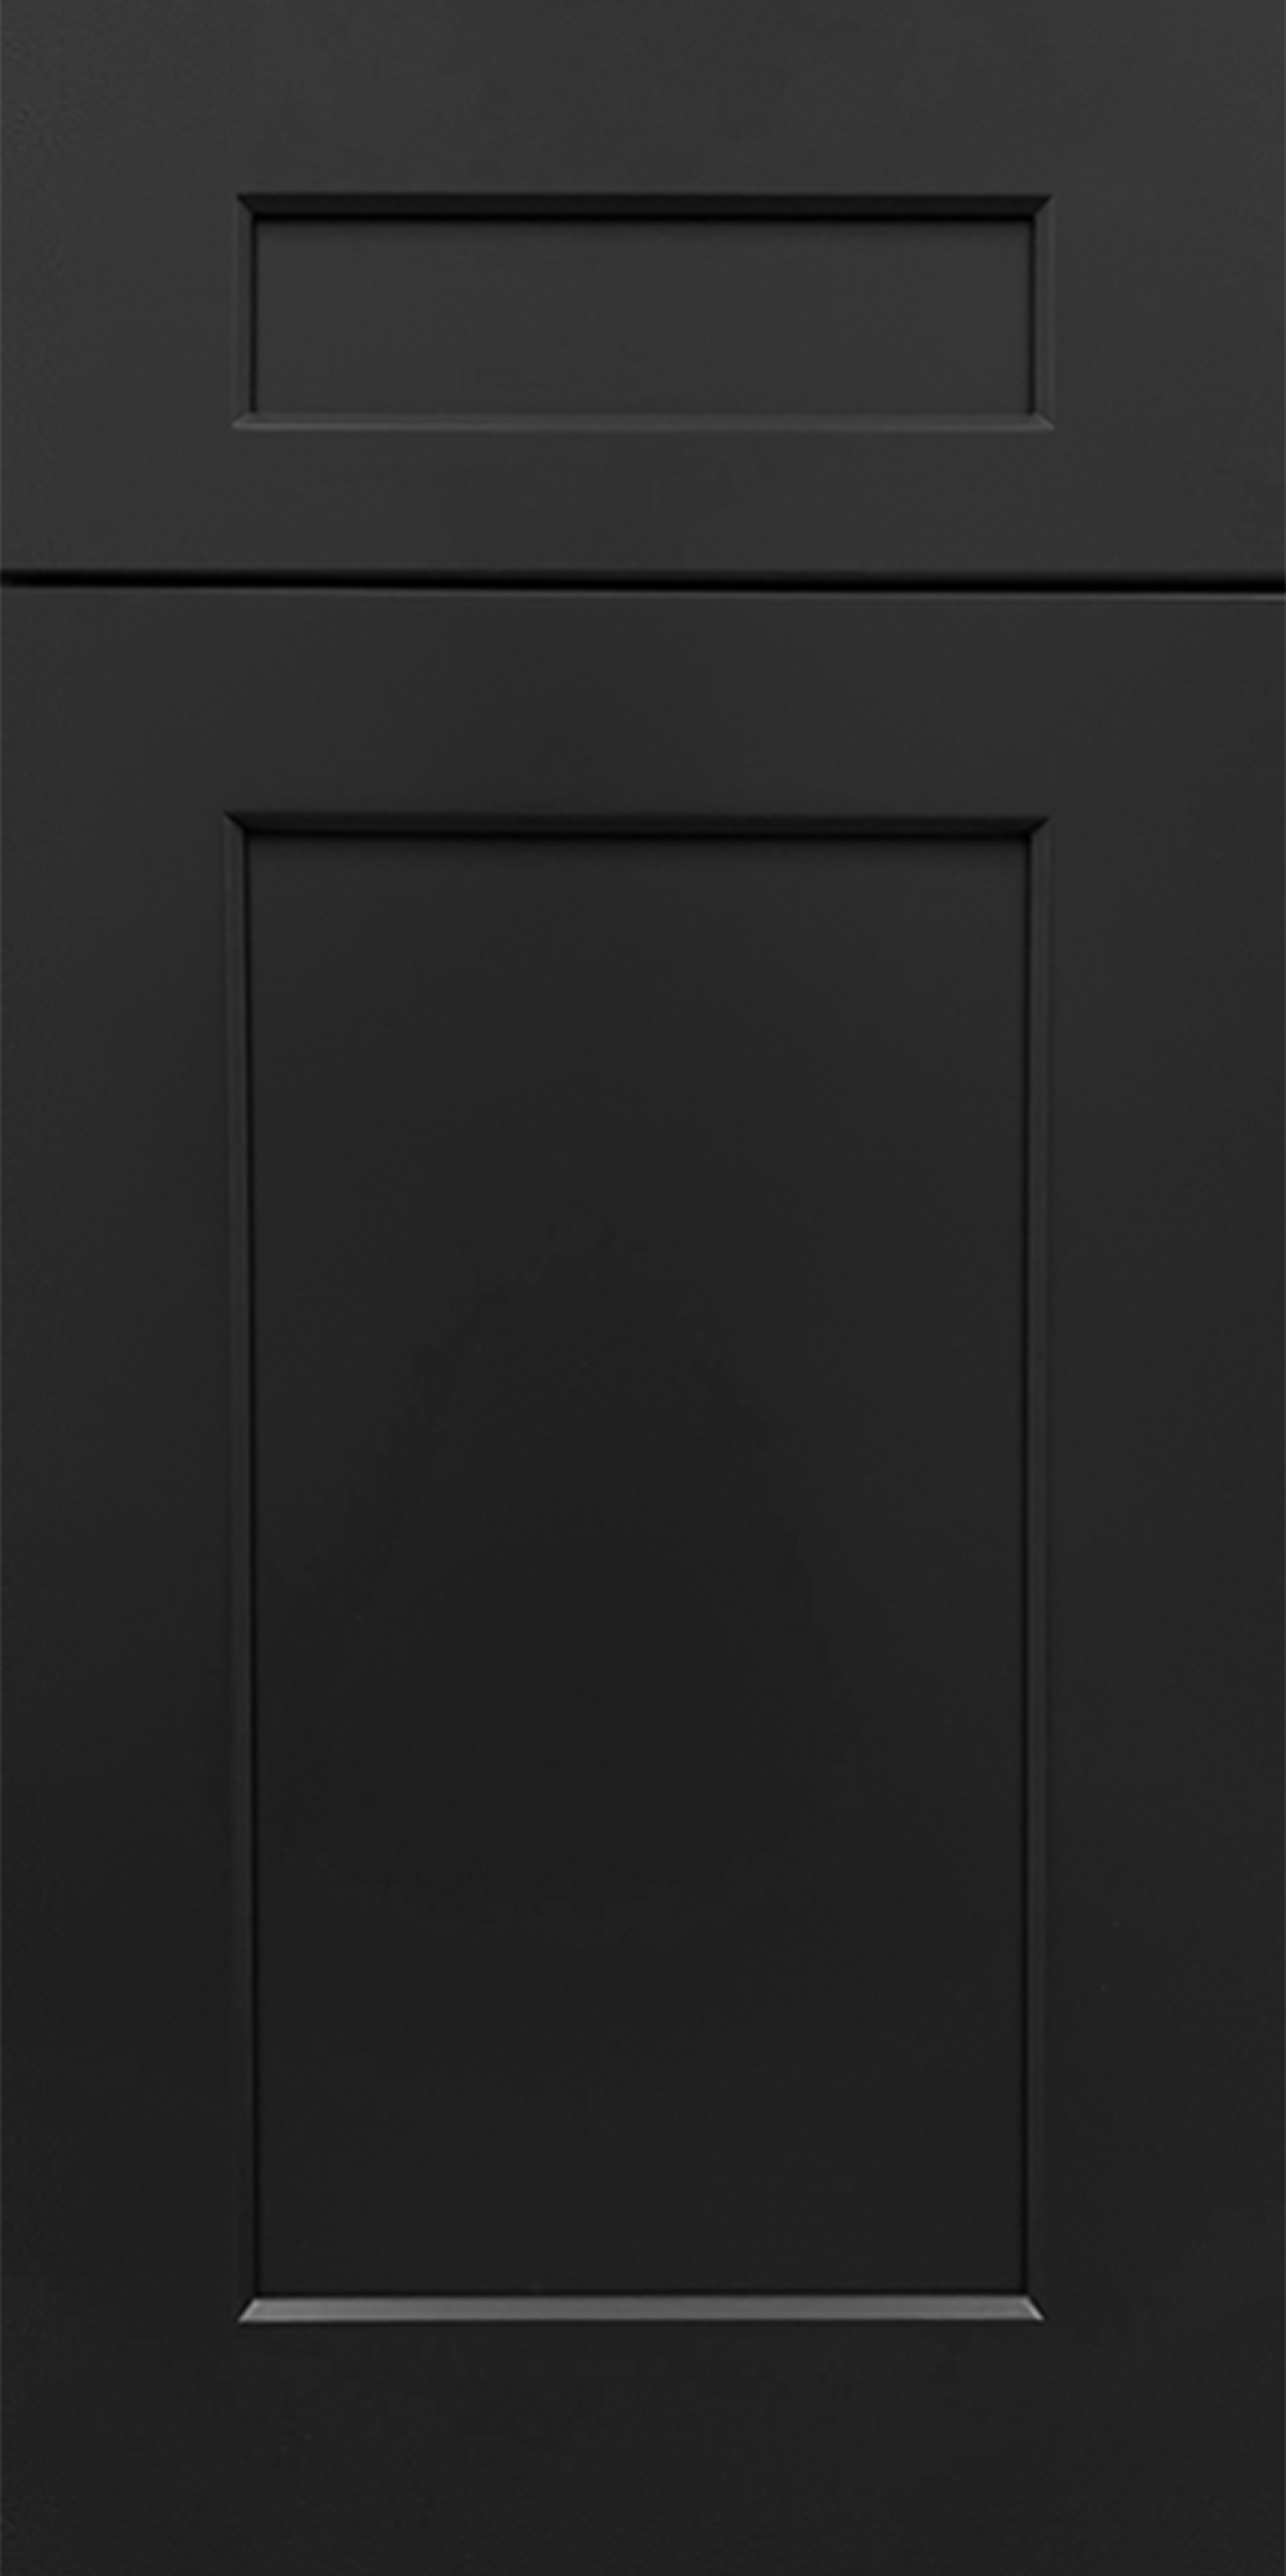 SHAKER BLACK SAMPLE DOOR - 11"W X 15"H X 3/4"D